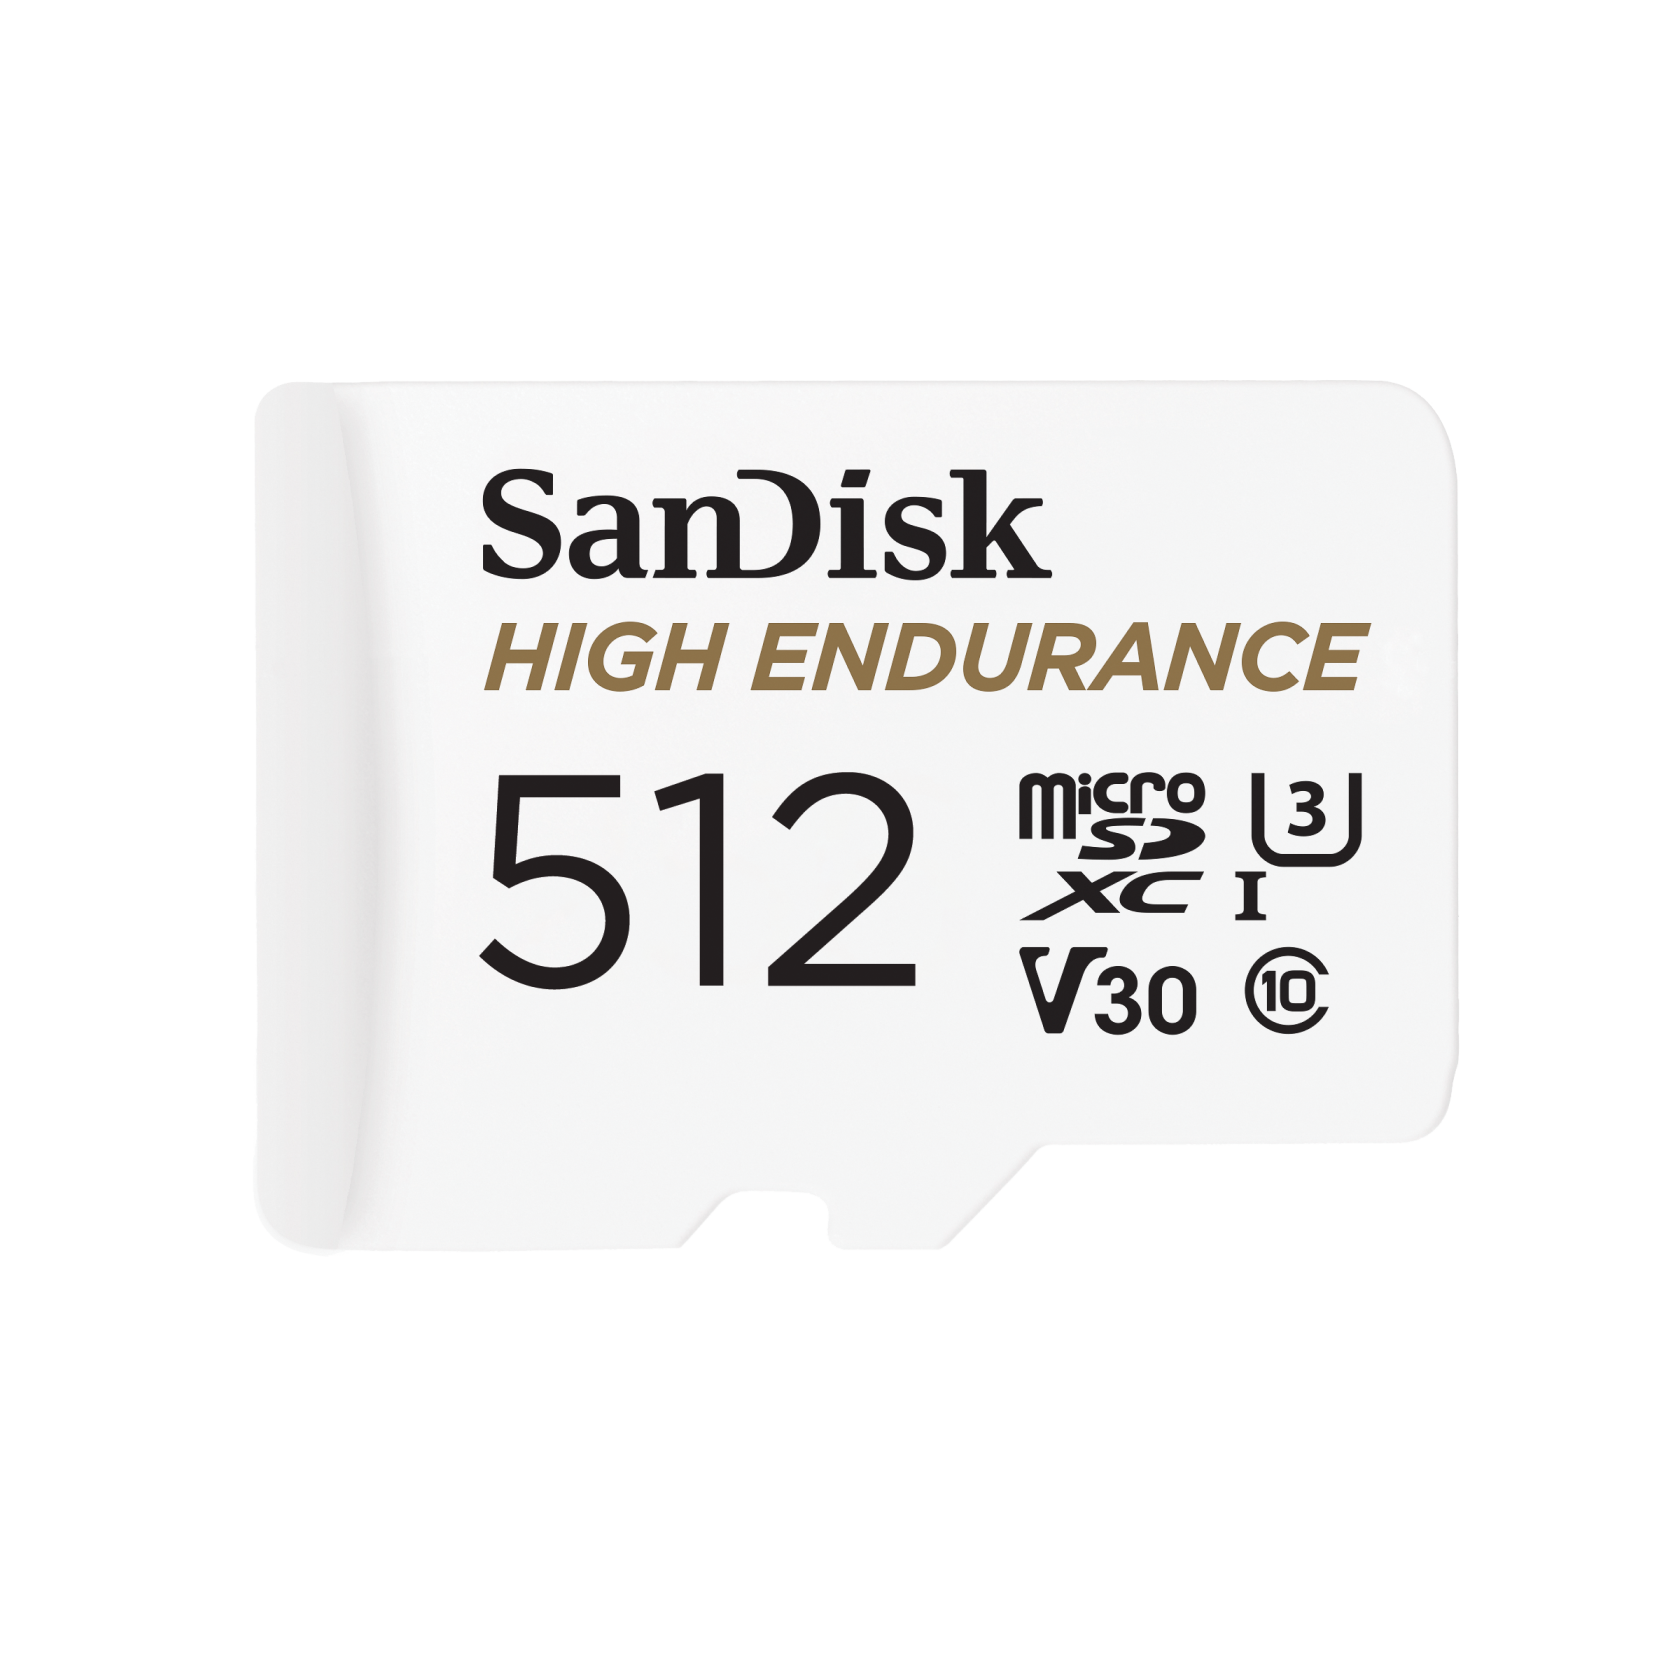 SanDisk 512GB- High Endurance MicroSD™ Card MicroSD Card - SDSQQNR-512G-GN6IA